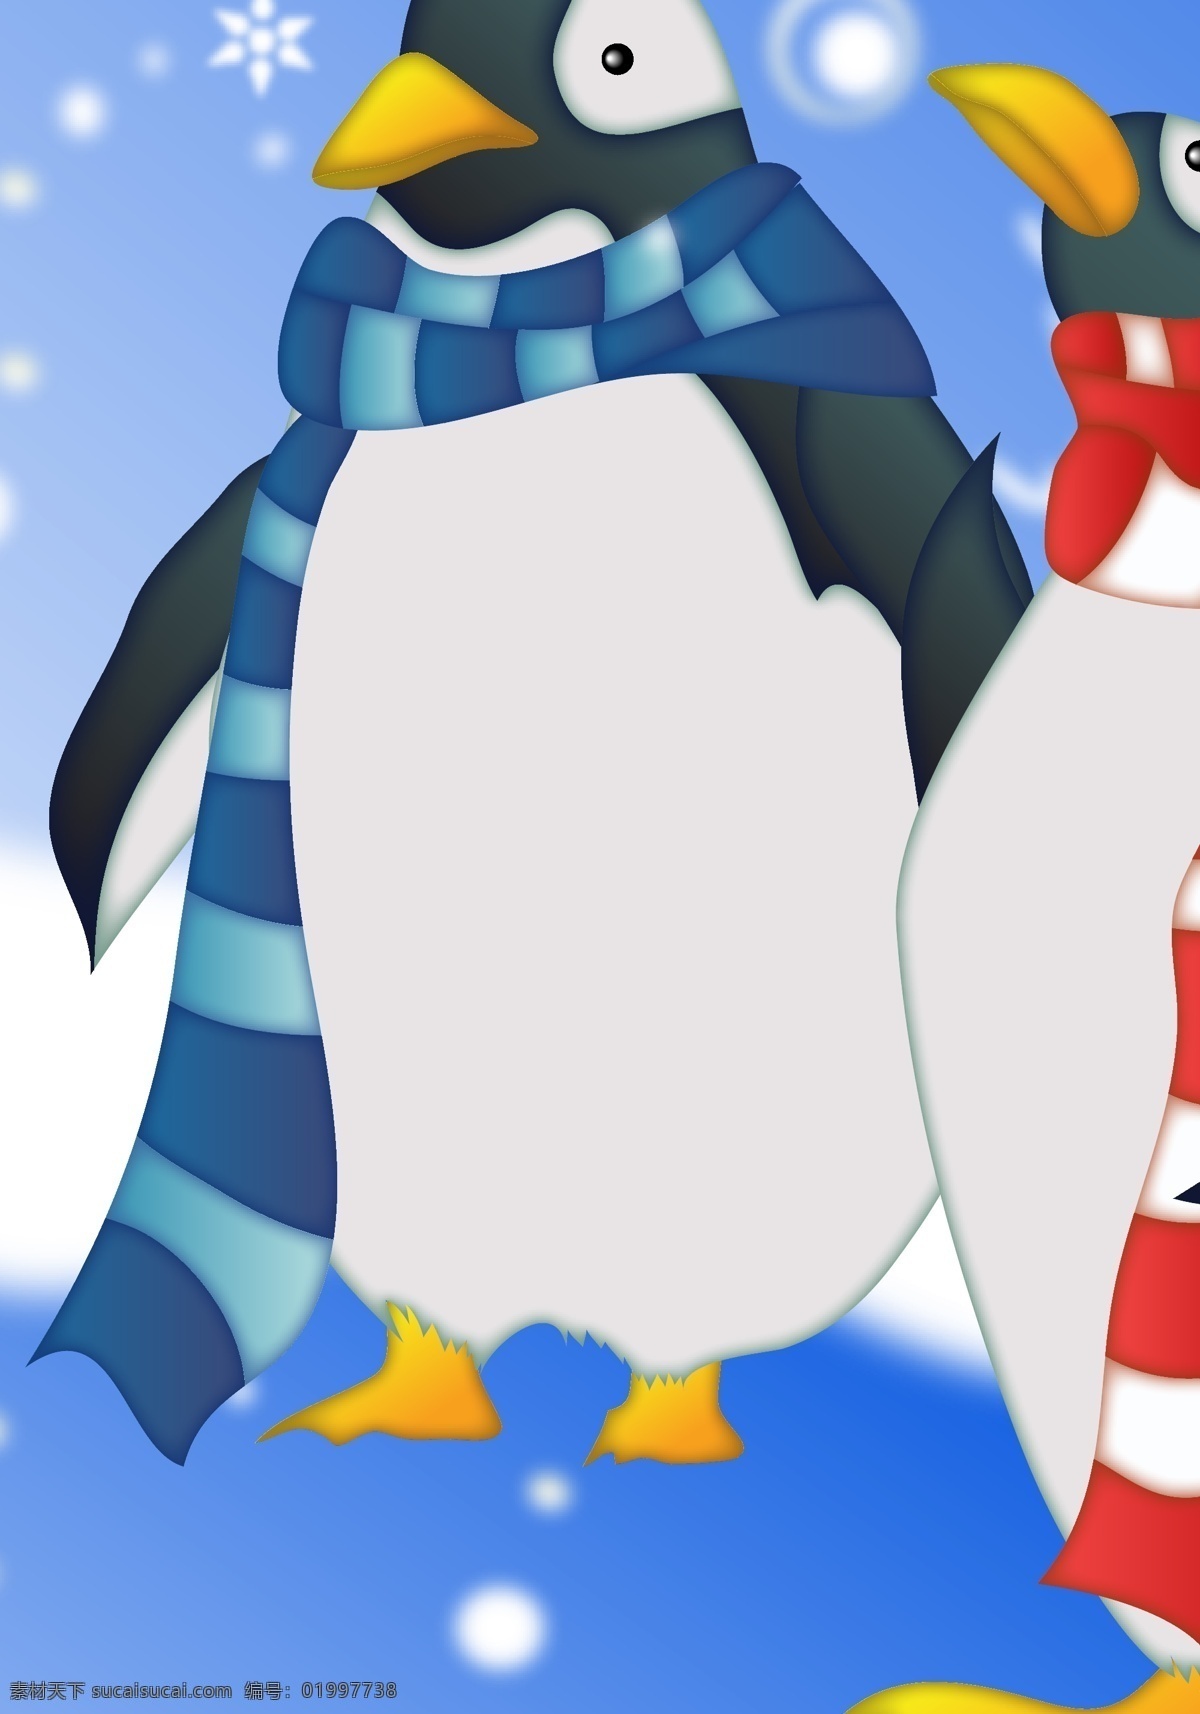 戴 围巾 企鹅 冬天 下雪 矢量图 生物世界